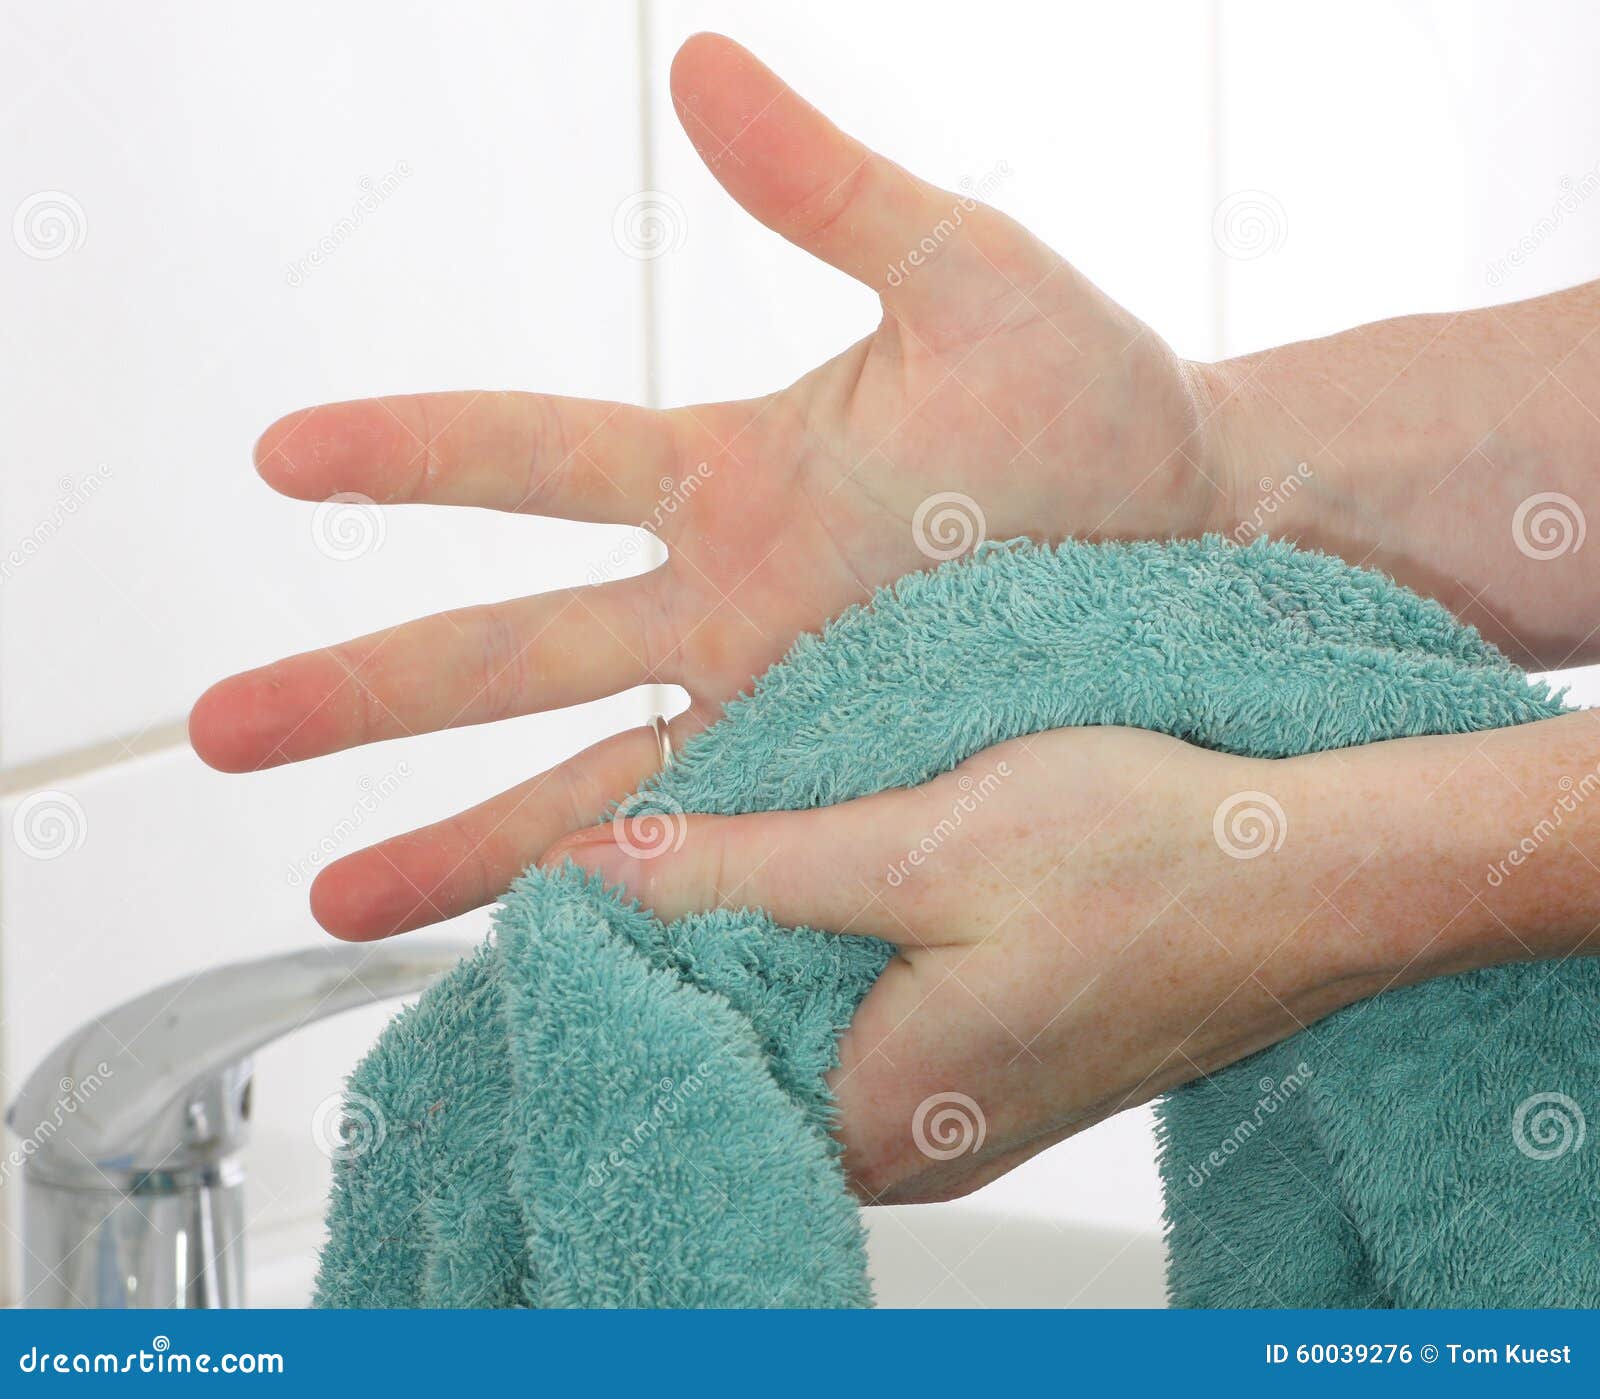 Полотенцем после мытья. Вытирание рук полотенцем. Полотенце для вытерание рук. Полотенце для рук медперсонала. Вытирать руки детские.